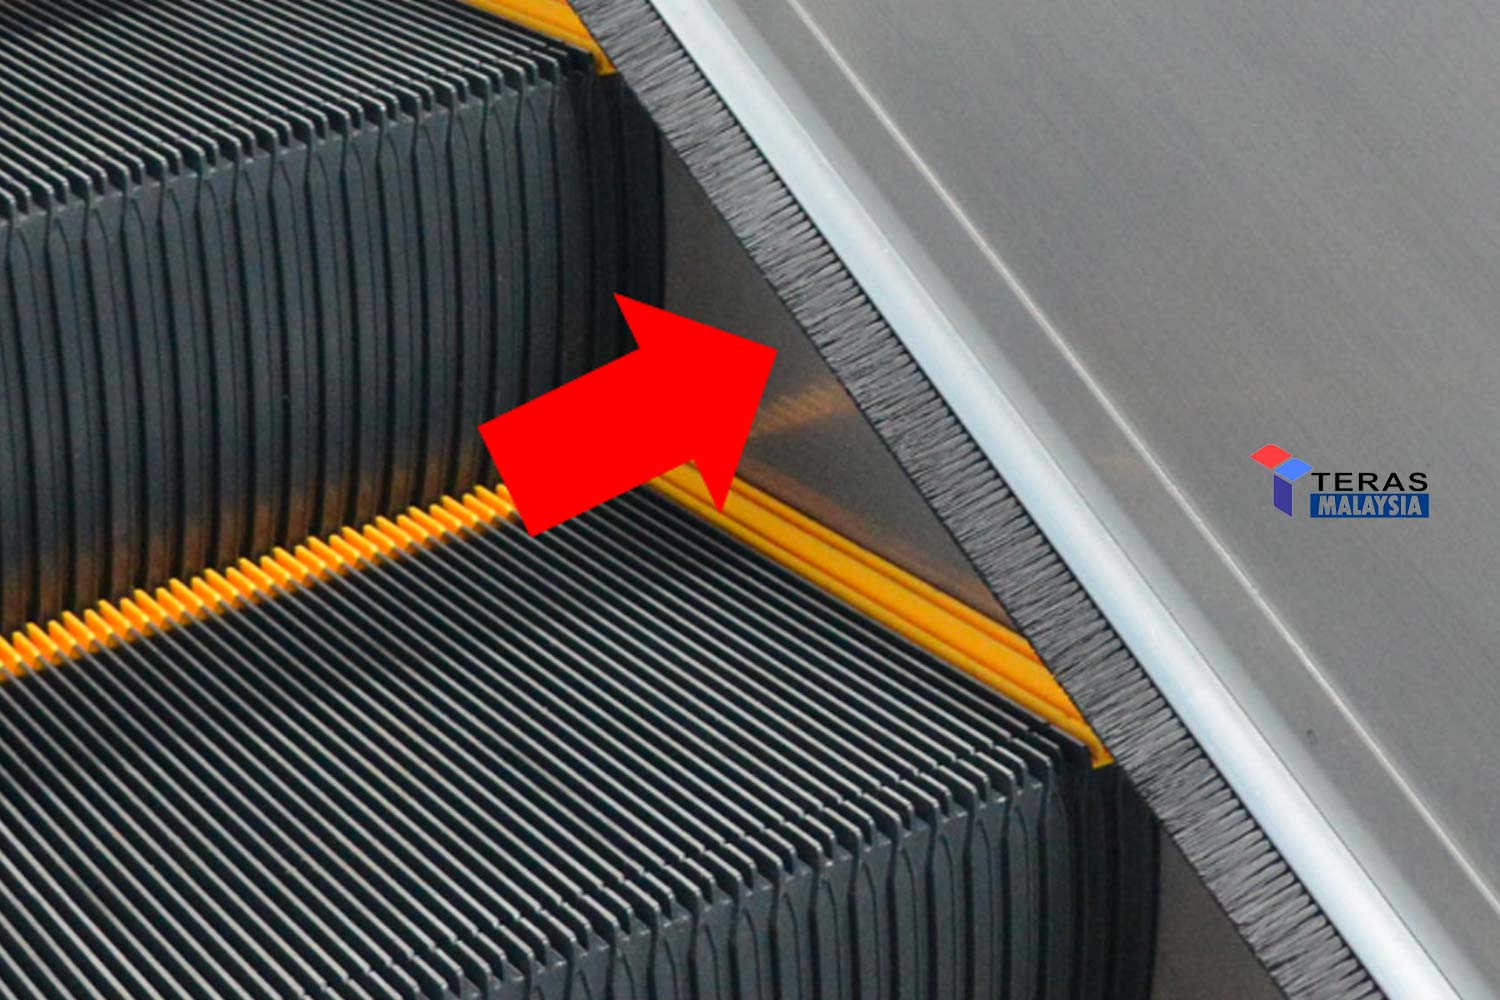 Ini fungsi sebenar bulu macam berus yang ada di tepi eskalator, ramai cakap untuk bersihkan kasut